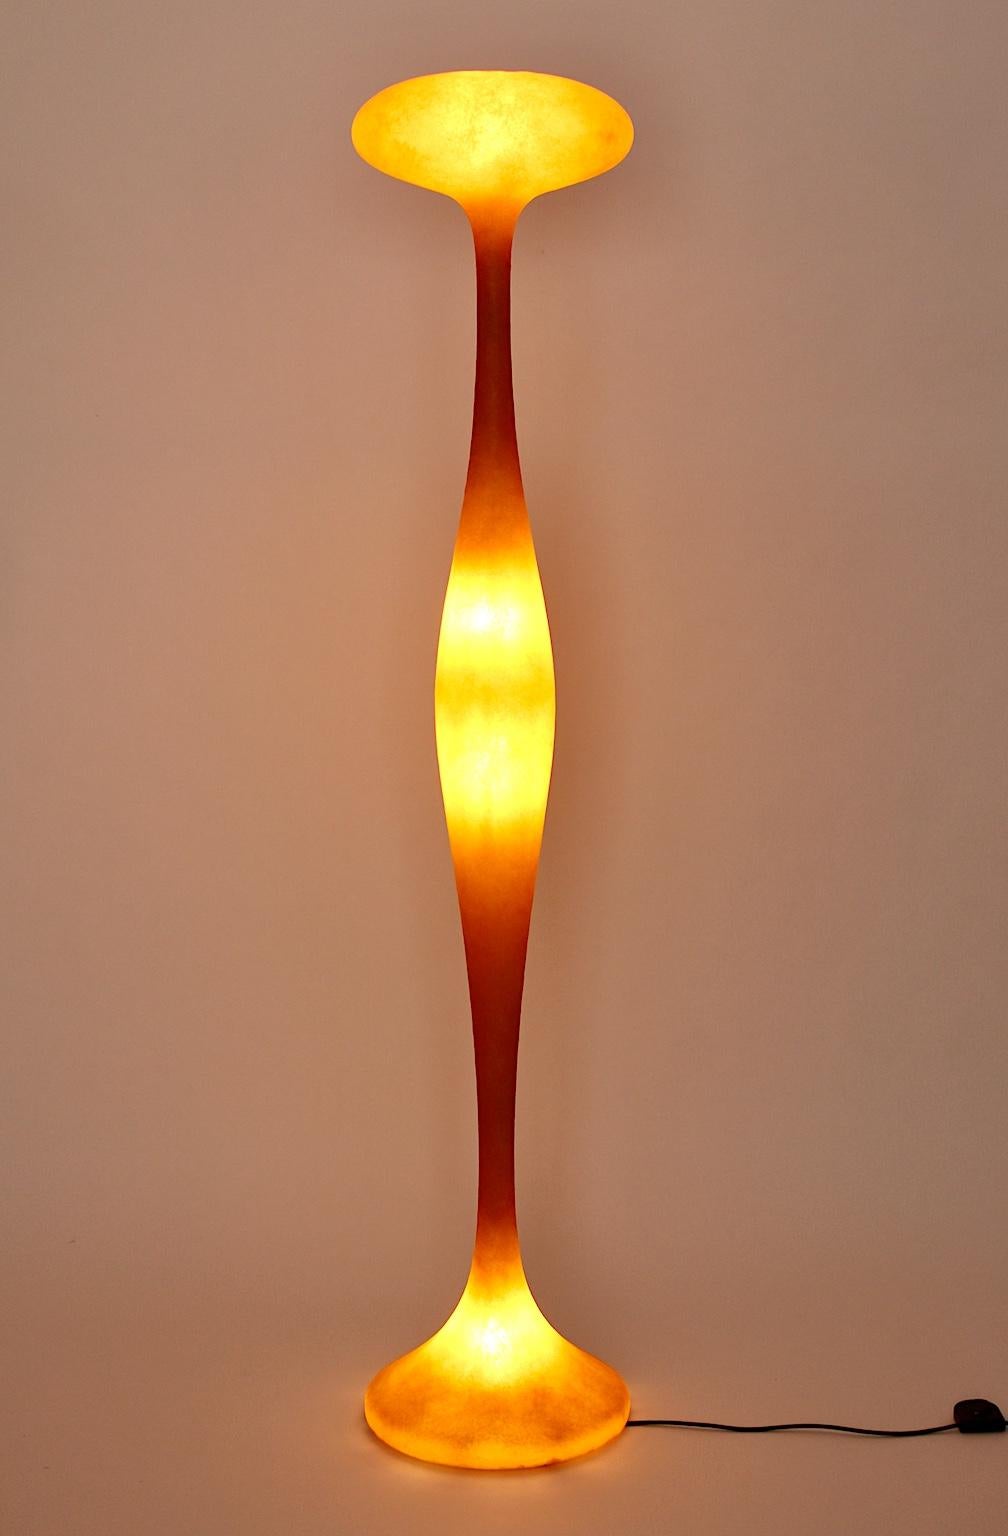 Un lampadaire moderne orange original de Guglielmo Berchicci, qui a été conçu pour Kundalini, Italie.
La forme du lampadaire ressemble à une colonne ondulante au design futuriste dans une couleur orange audacieuse.
Elle a été fabriquée en fibre de